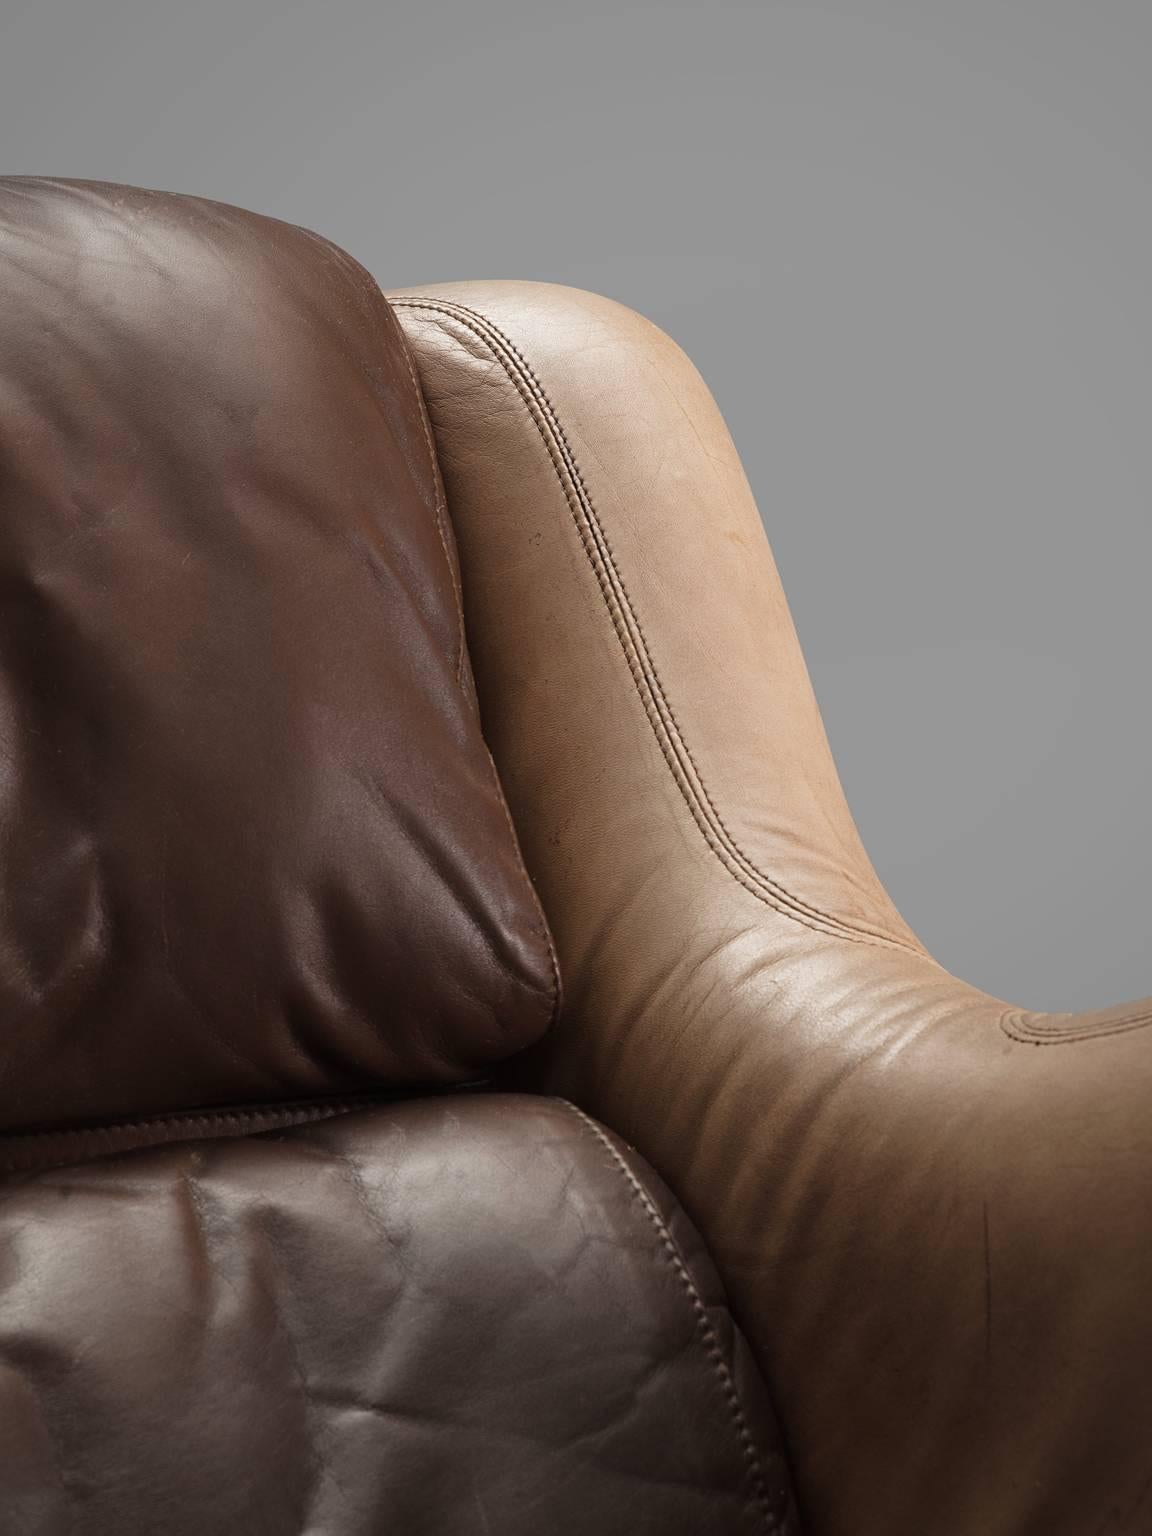 Yrjö Kukkapuro 'Karuselli' Lounge Chair in Brown Leather Upholstery 1